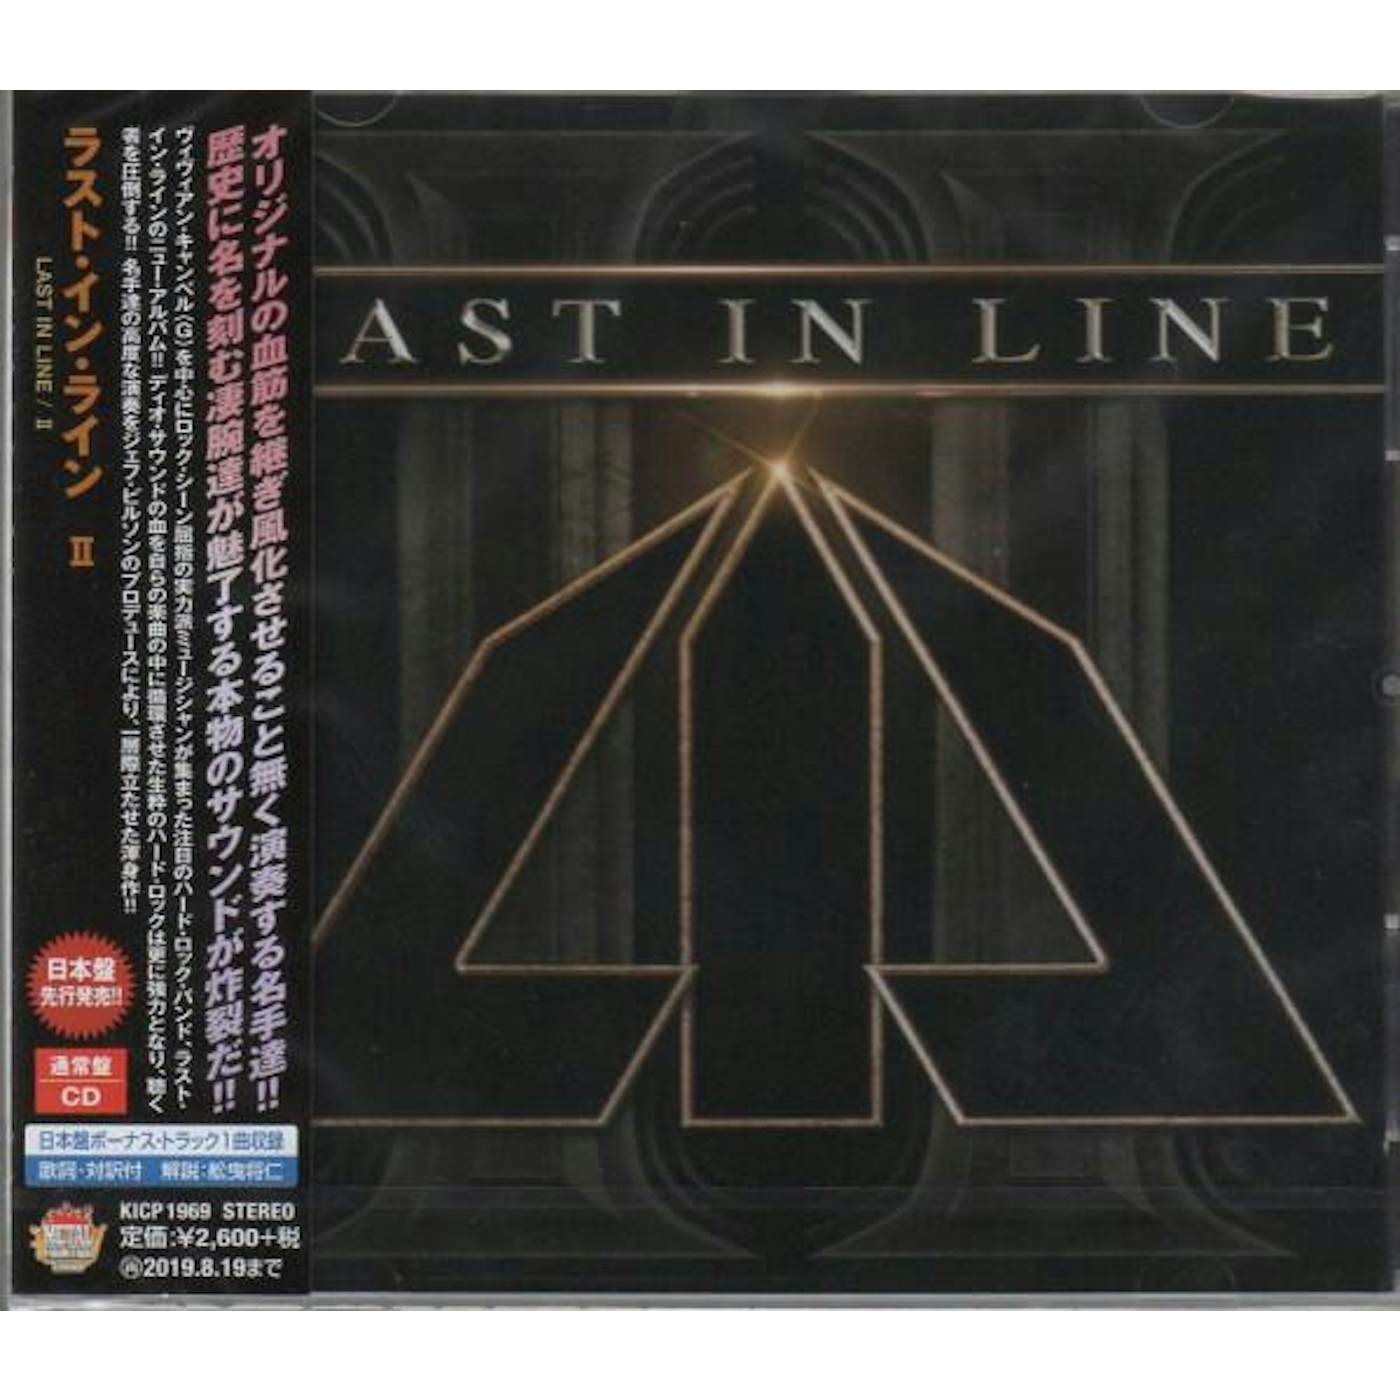 Last in Line 2 CD